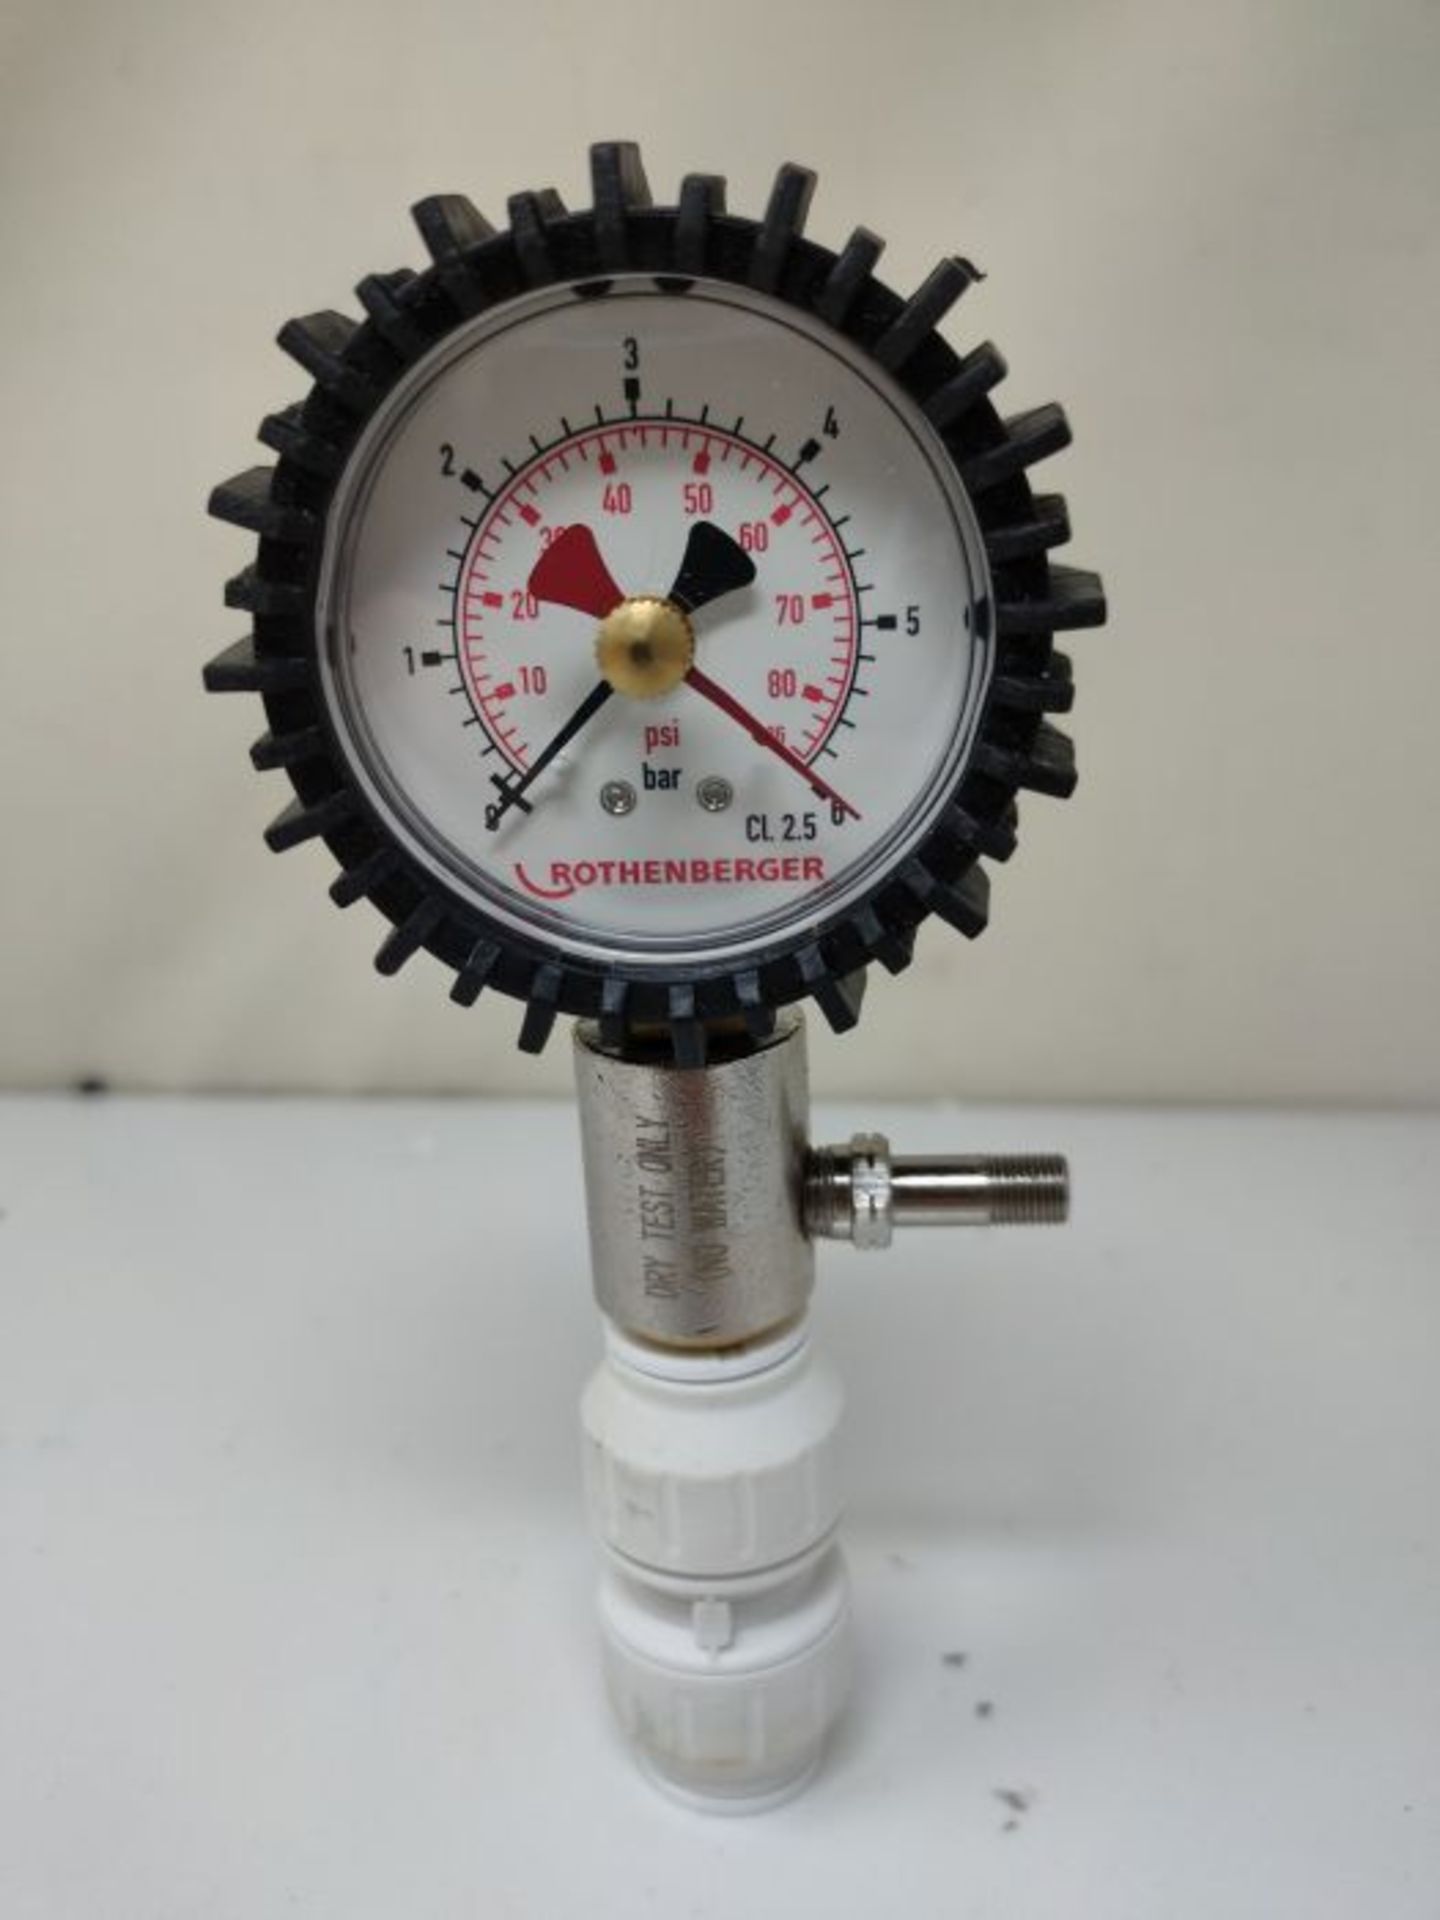 Rothenberger 67105 Dry Pressure Test Kit (0-6 BAR) - Image 2 of 3